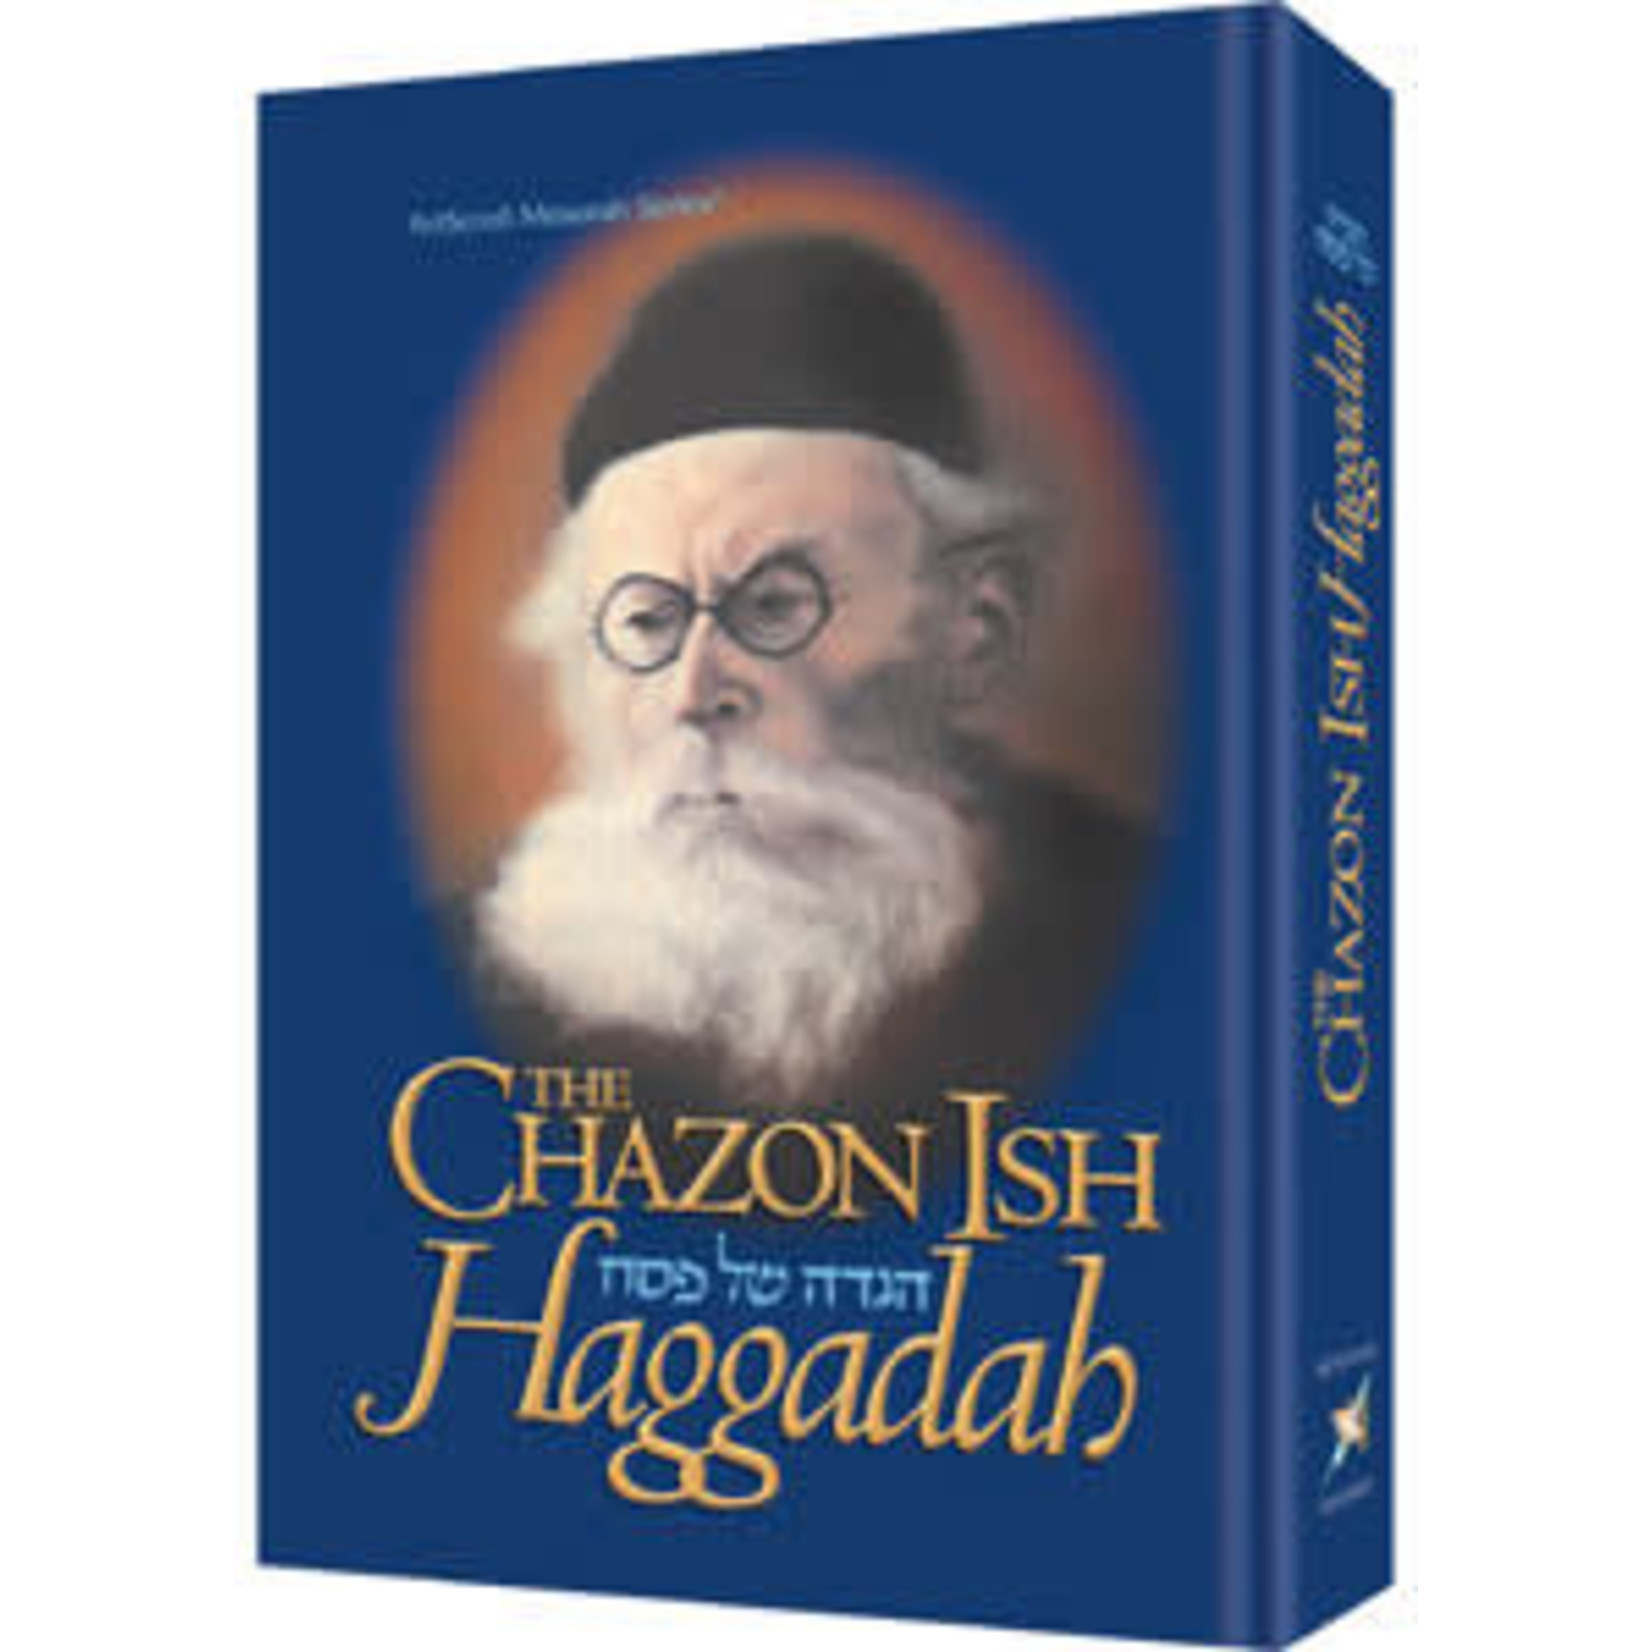 Chazon Ish Haggadah